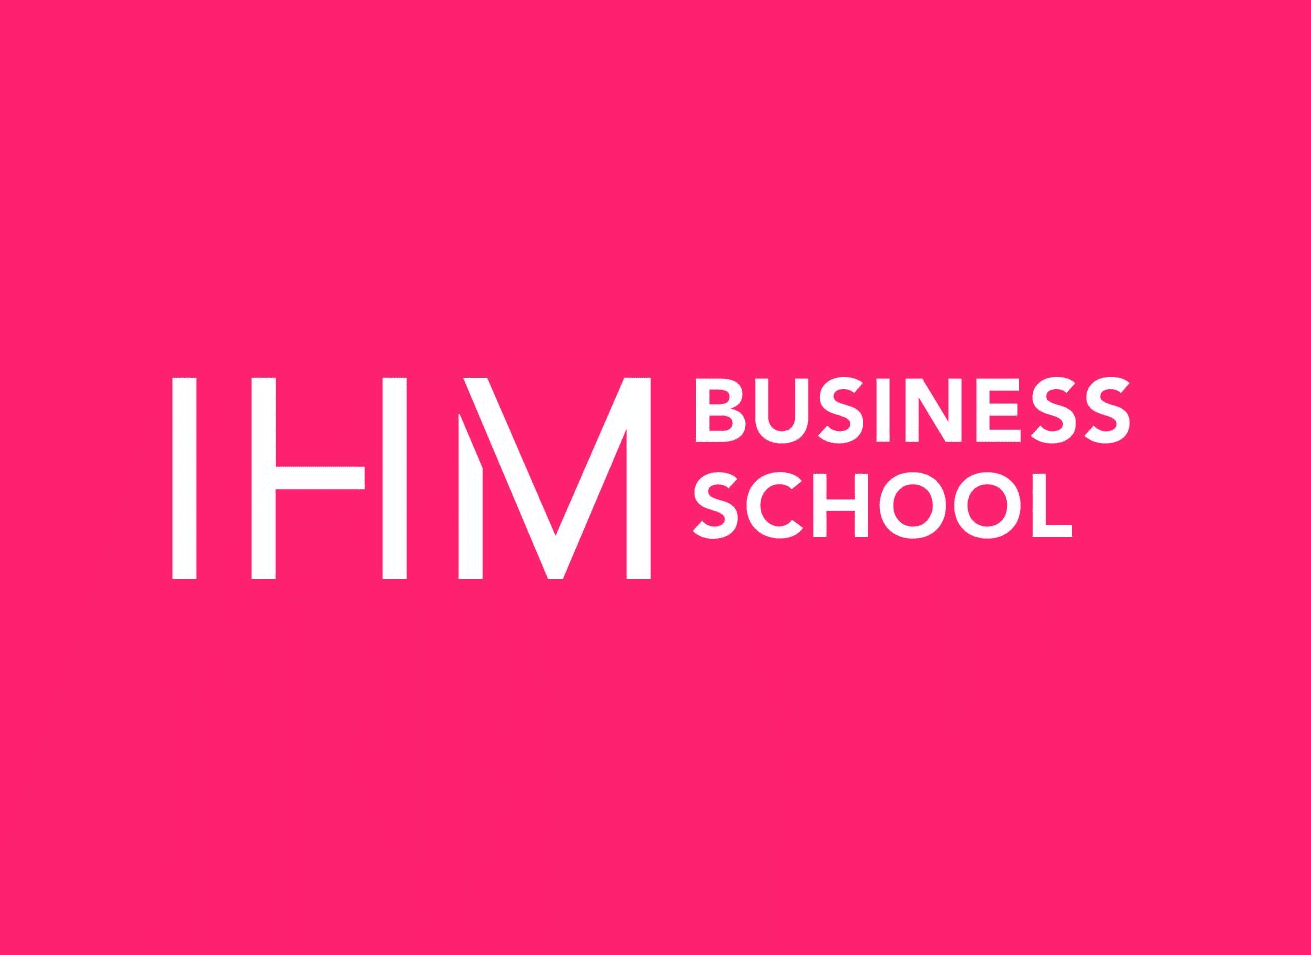 IHM Business School lanserar ny kurs inom Live Shopping tillsammans med Streamify